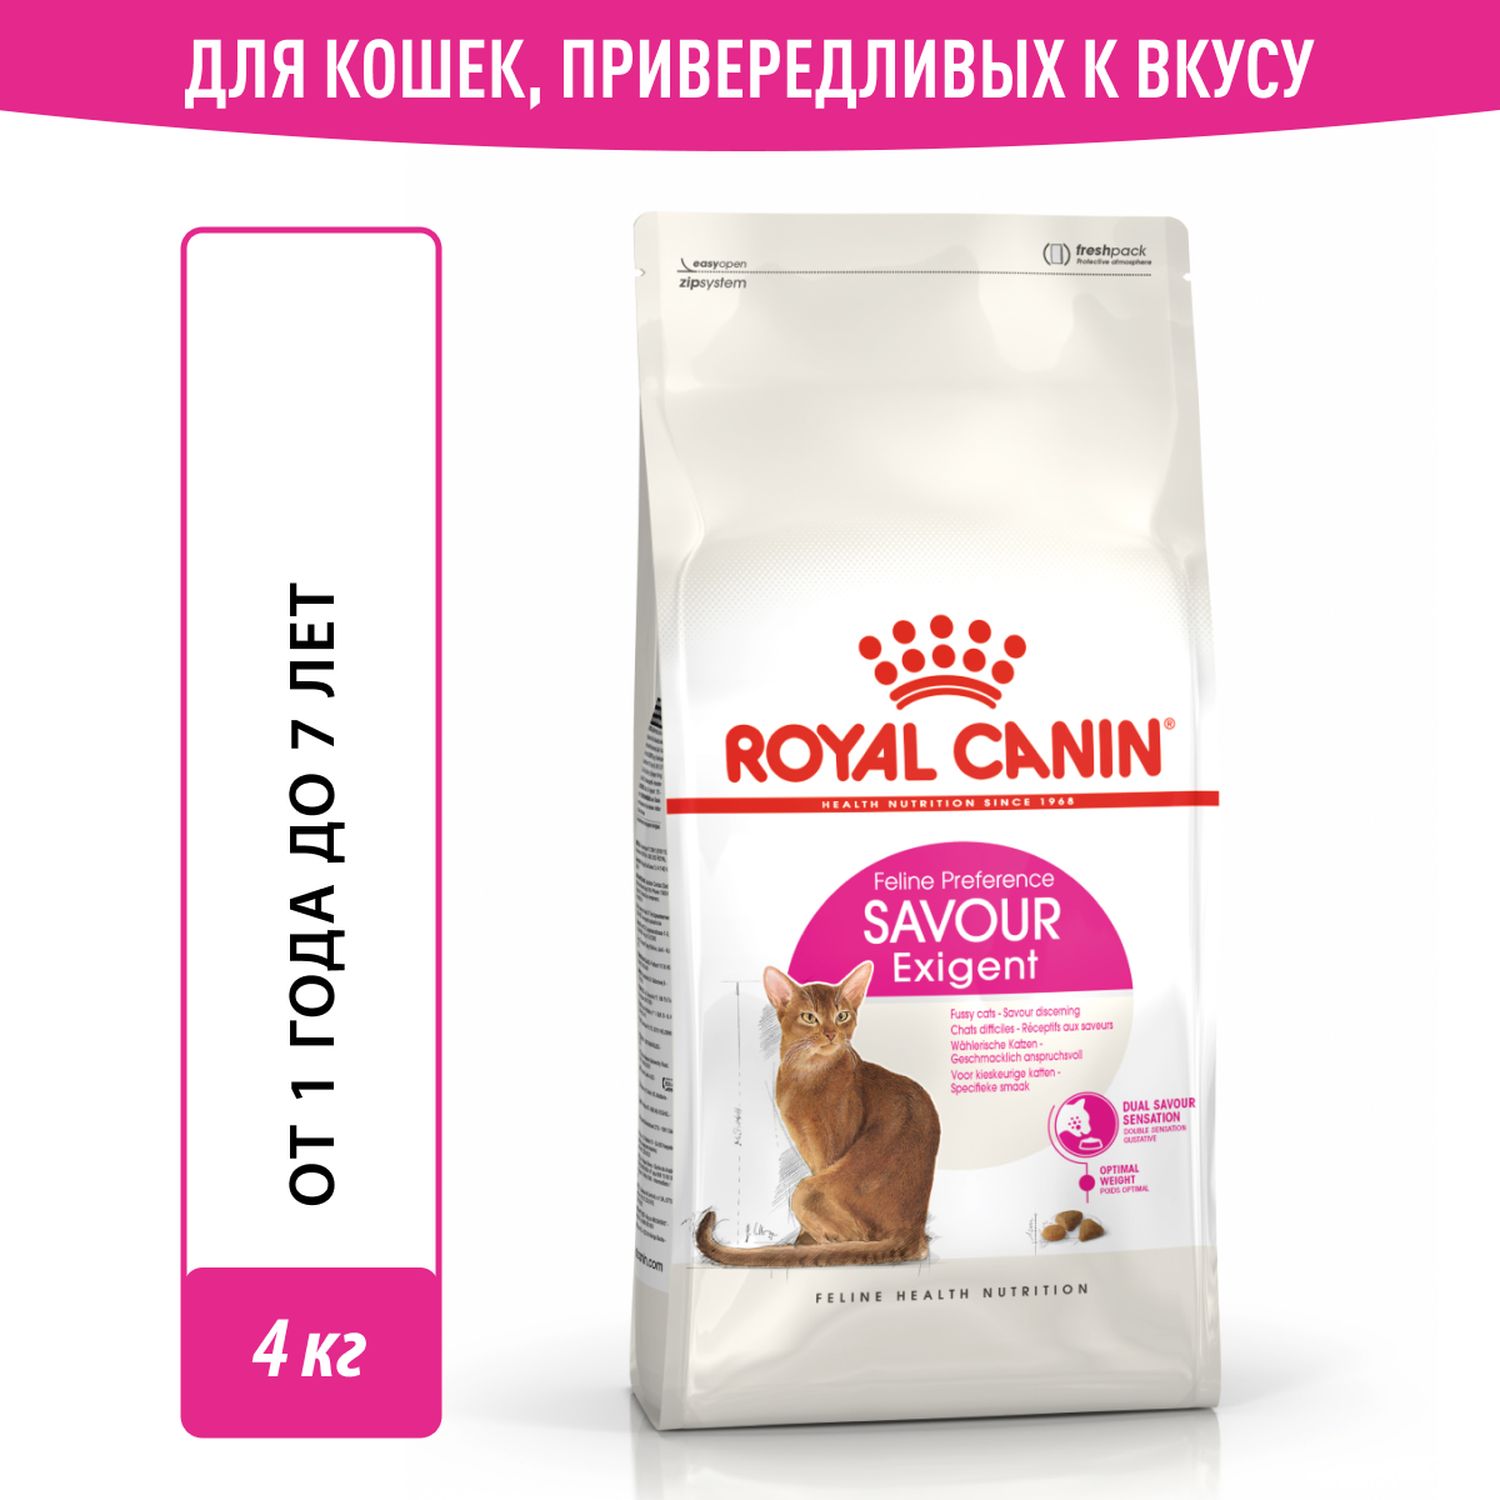 Корм сухой для кошек ROYAL CANIN Exigent Savour 4кг привередливых к вкусу продукта - фото 1